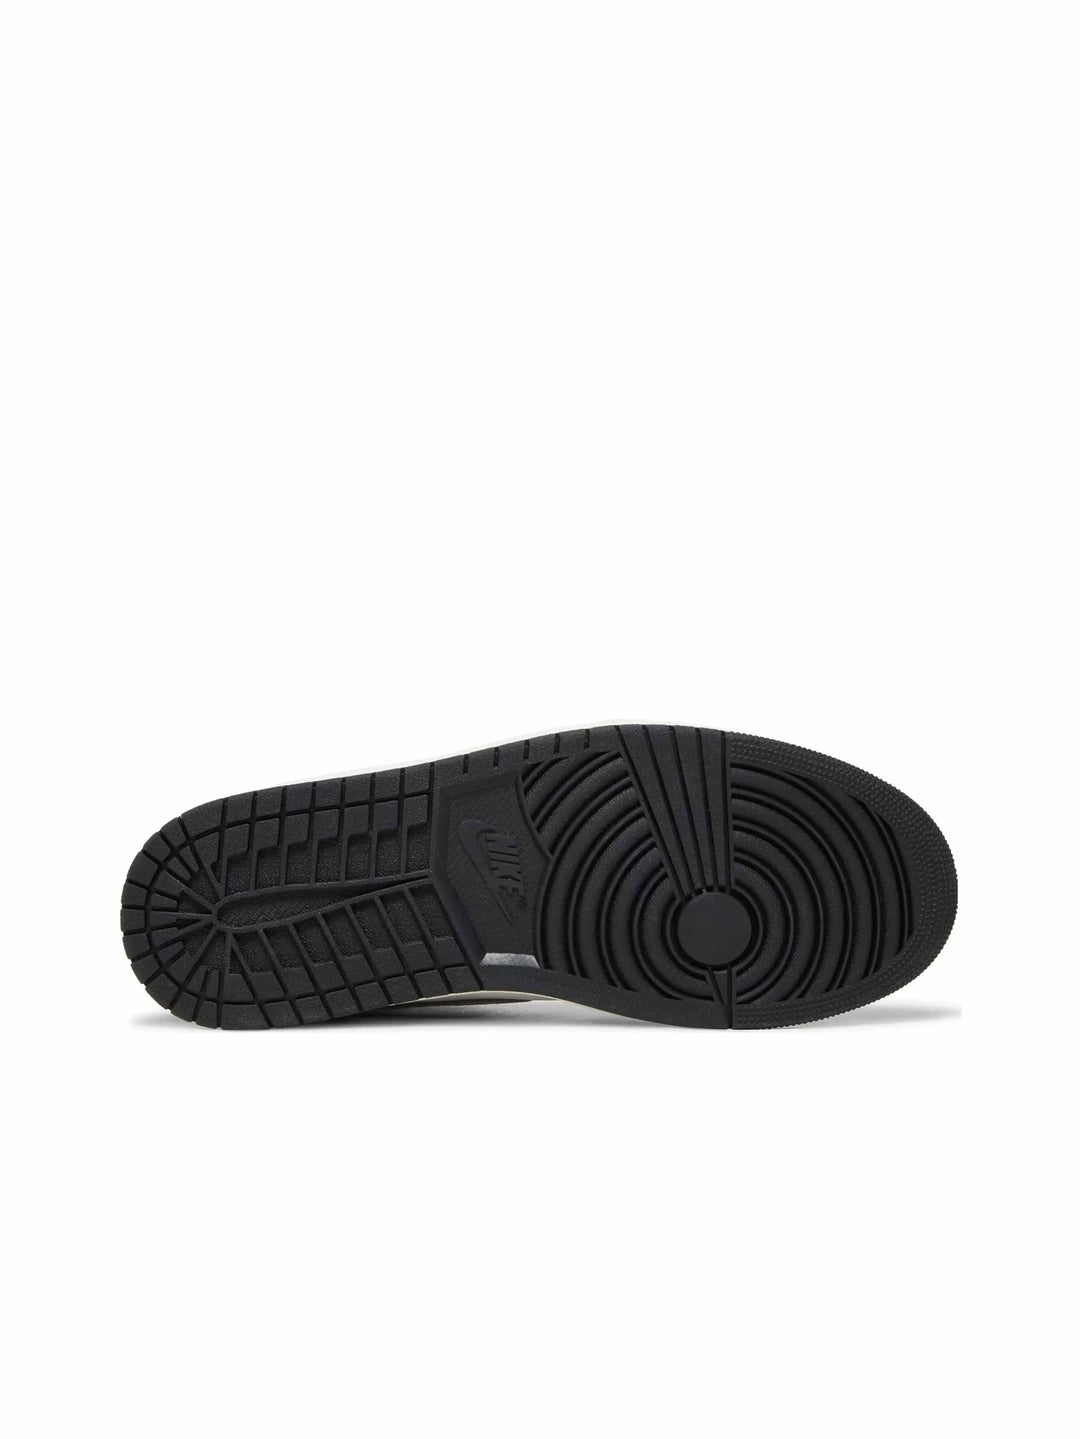 Nike Air Jordan 1 Retro High OG Washed Black - Prior